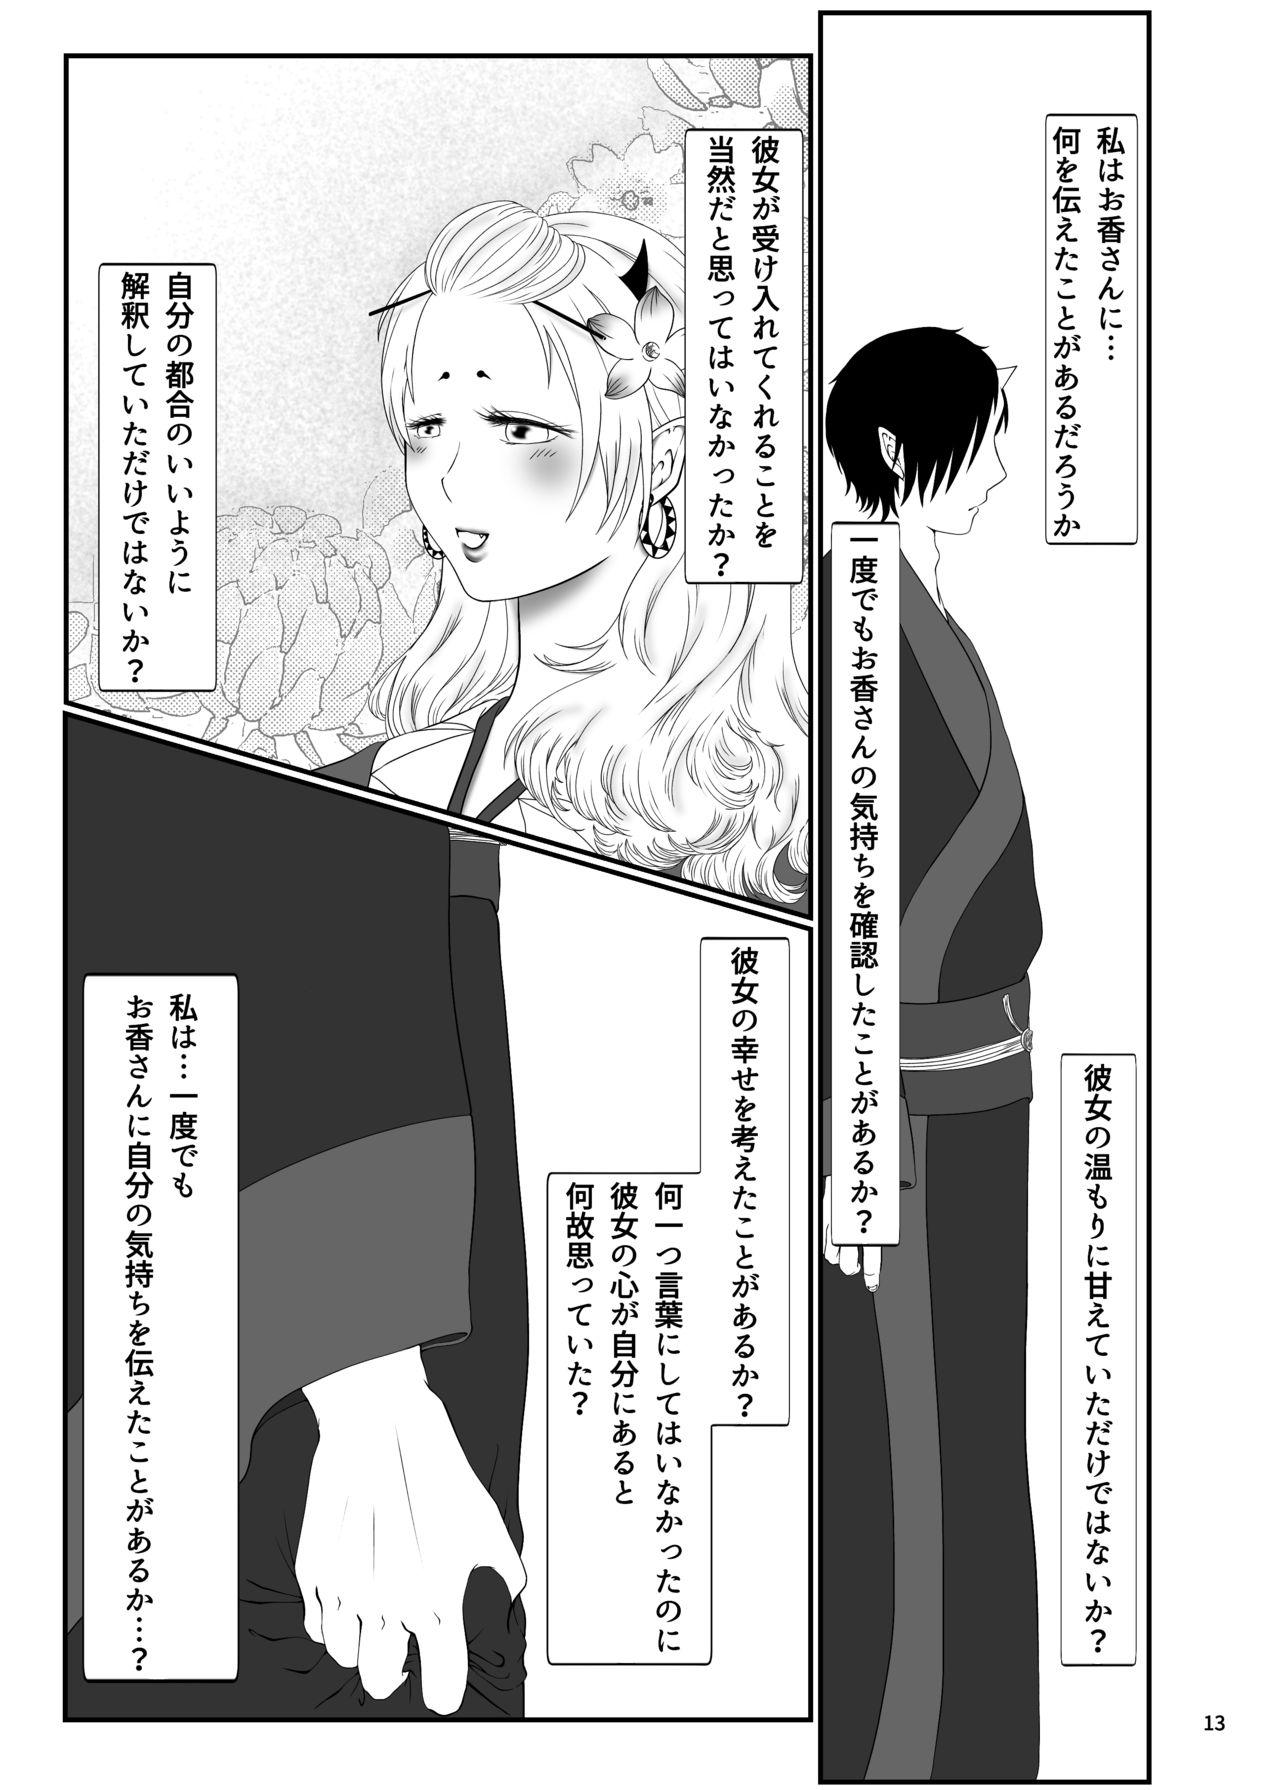 Bigdick Touni Anata no Mono - Hoozuki no reitetsu Bedroom - Page 12